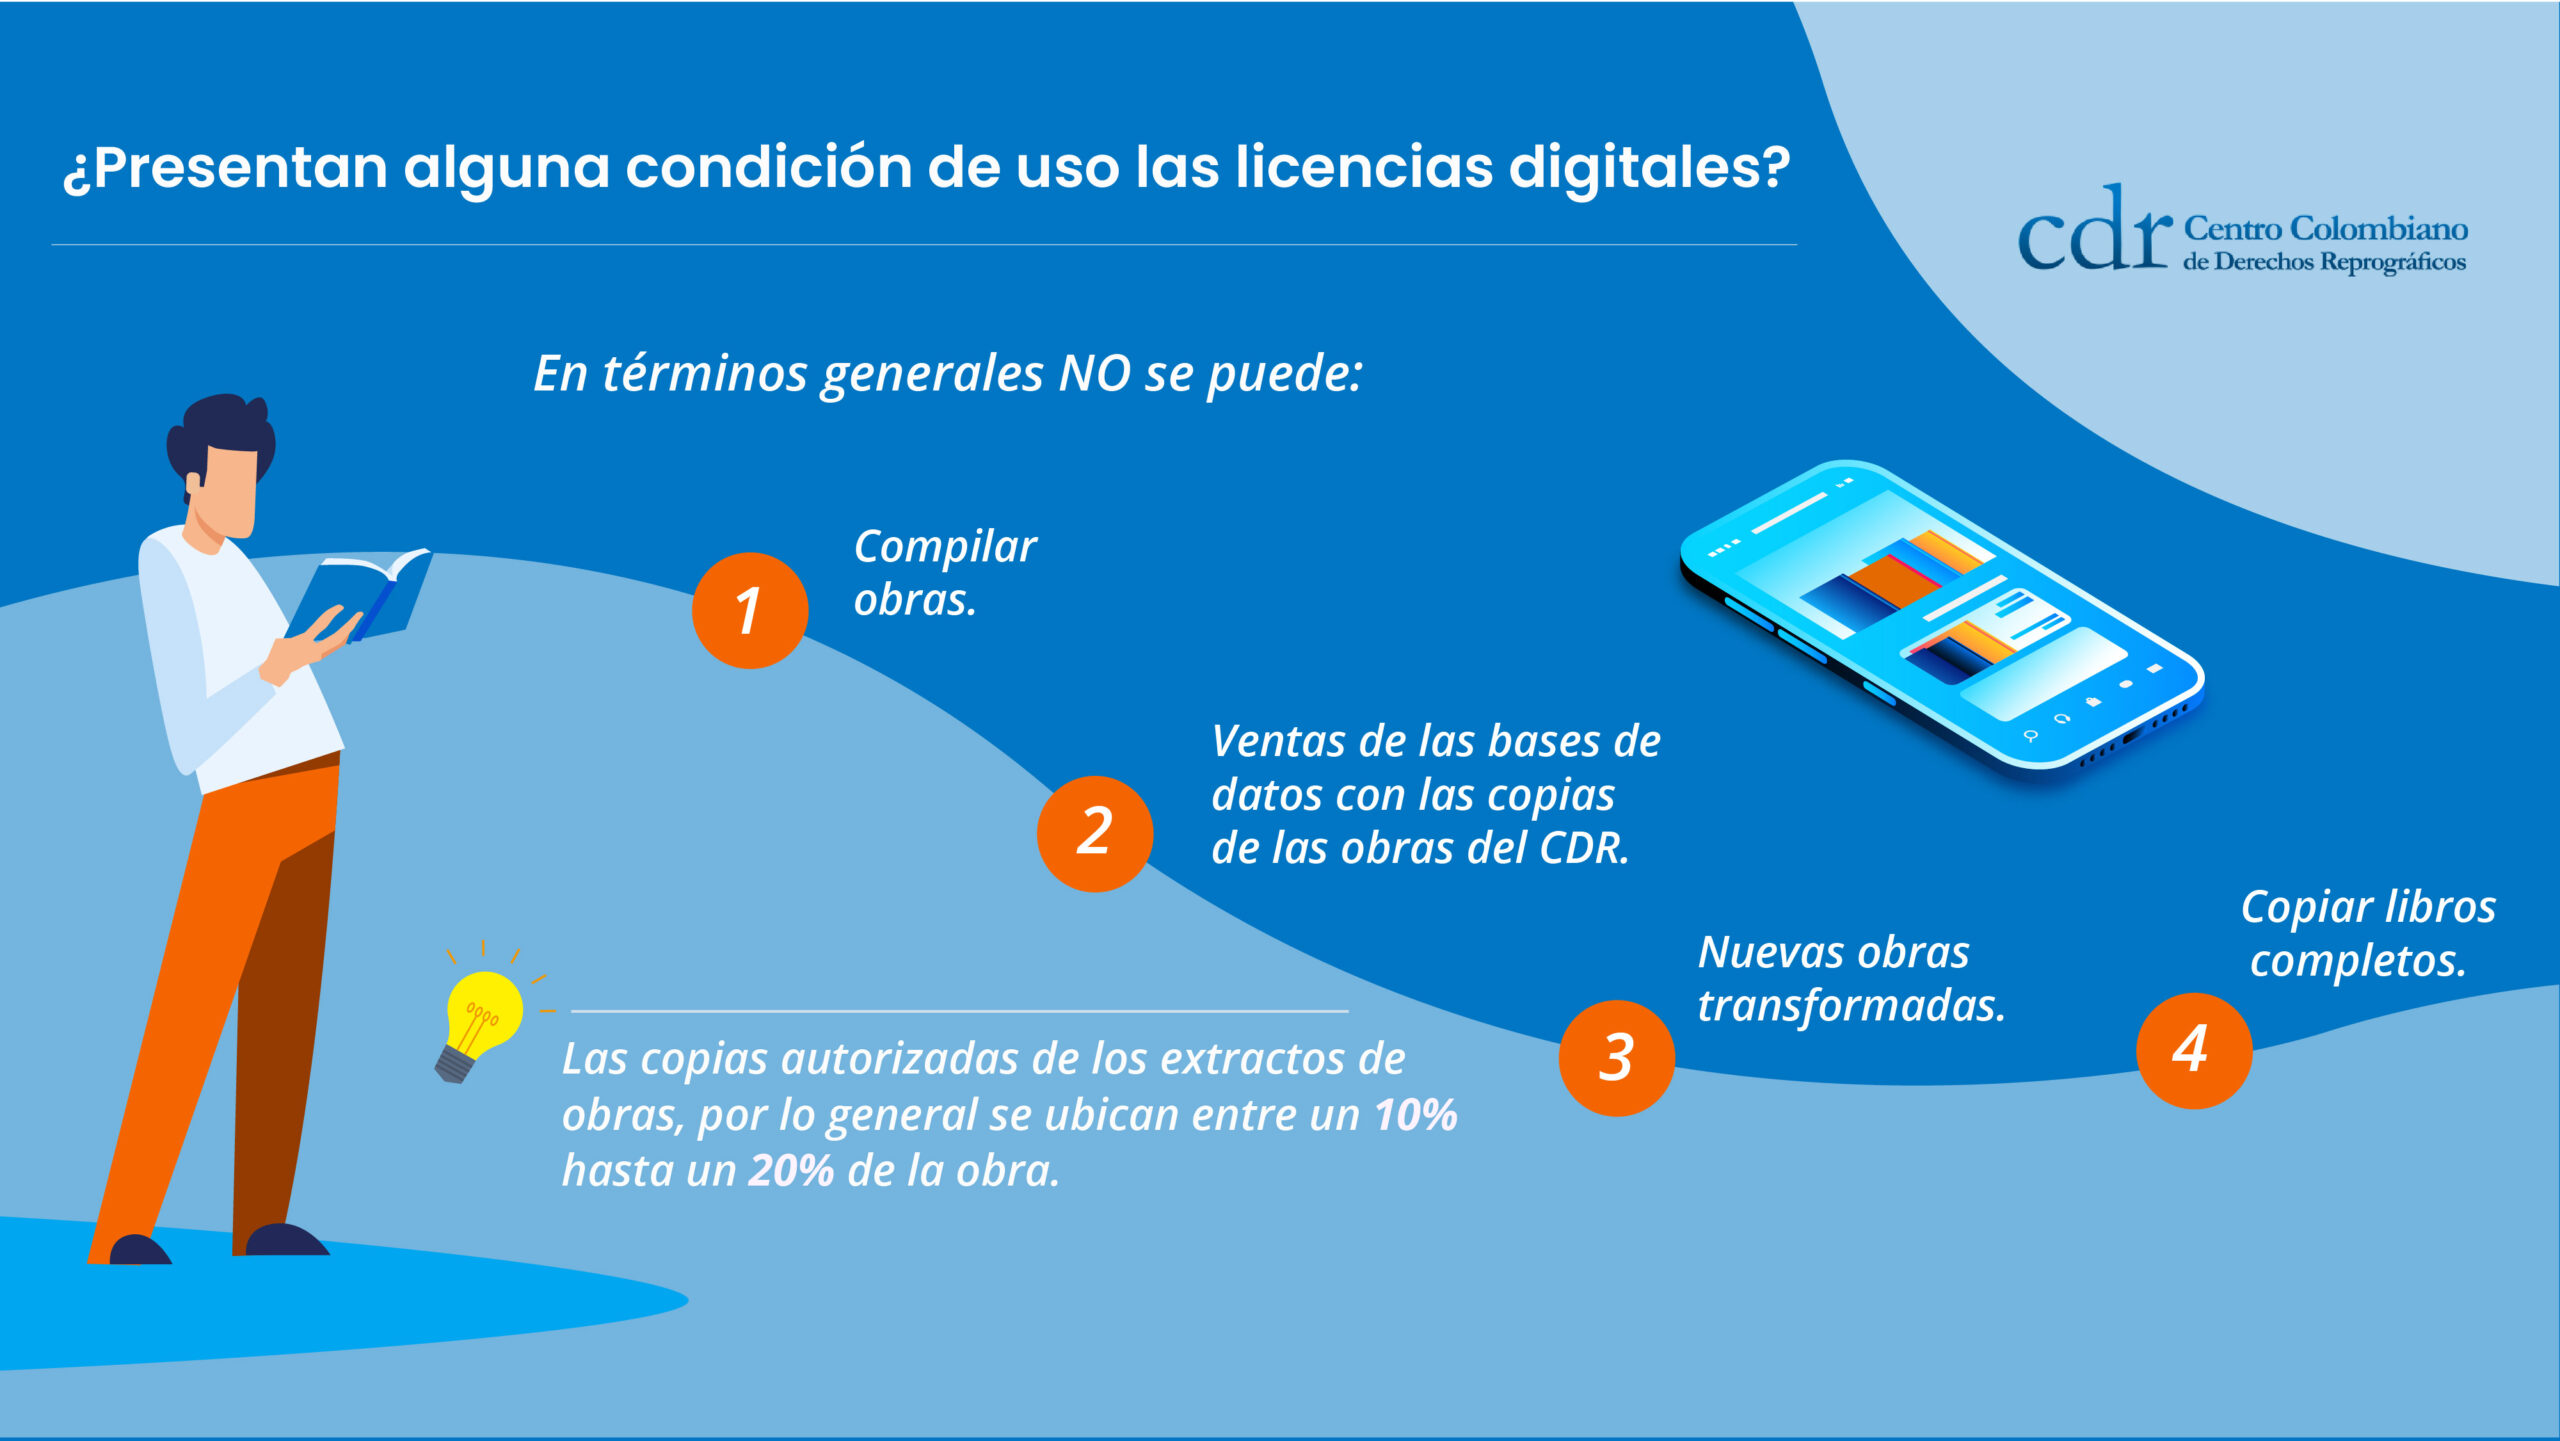 Condiciones de uso de las licencias digitales emitidas por el CDR